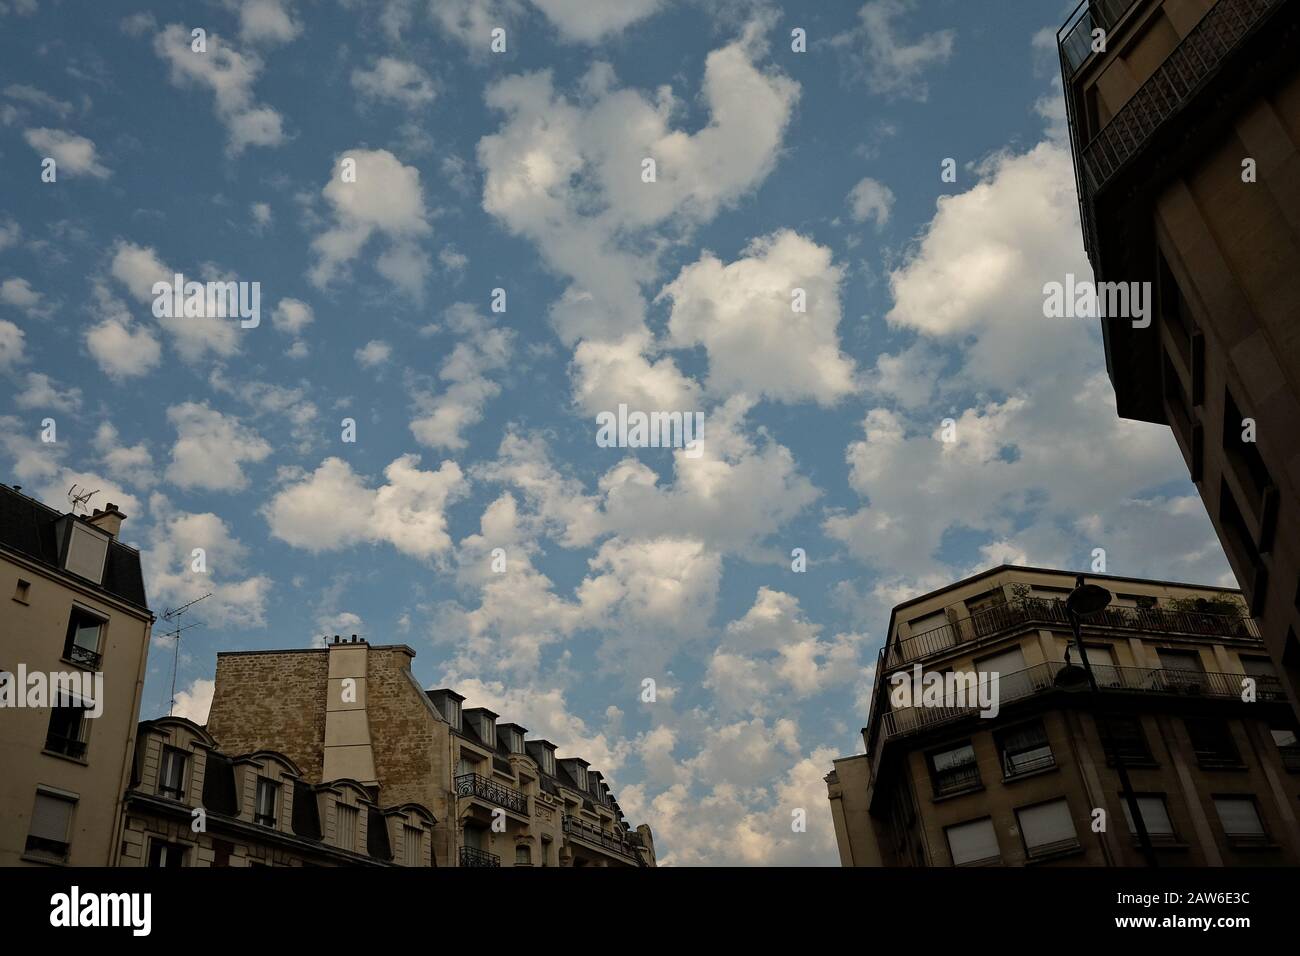 En fin d'après-midi, en été à Paris, en France, des nuages blancs moelleux flottant au-dessus des bâtiments mansardés de Paris Appartement sur un ciel bleu ensoleillé Banque D'Images